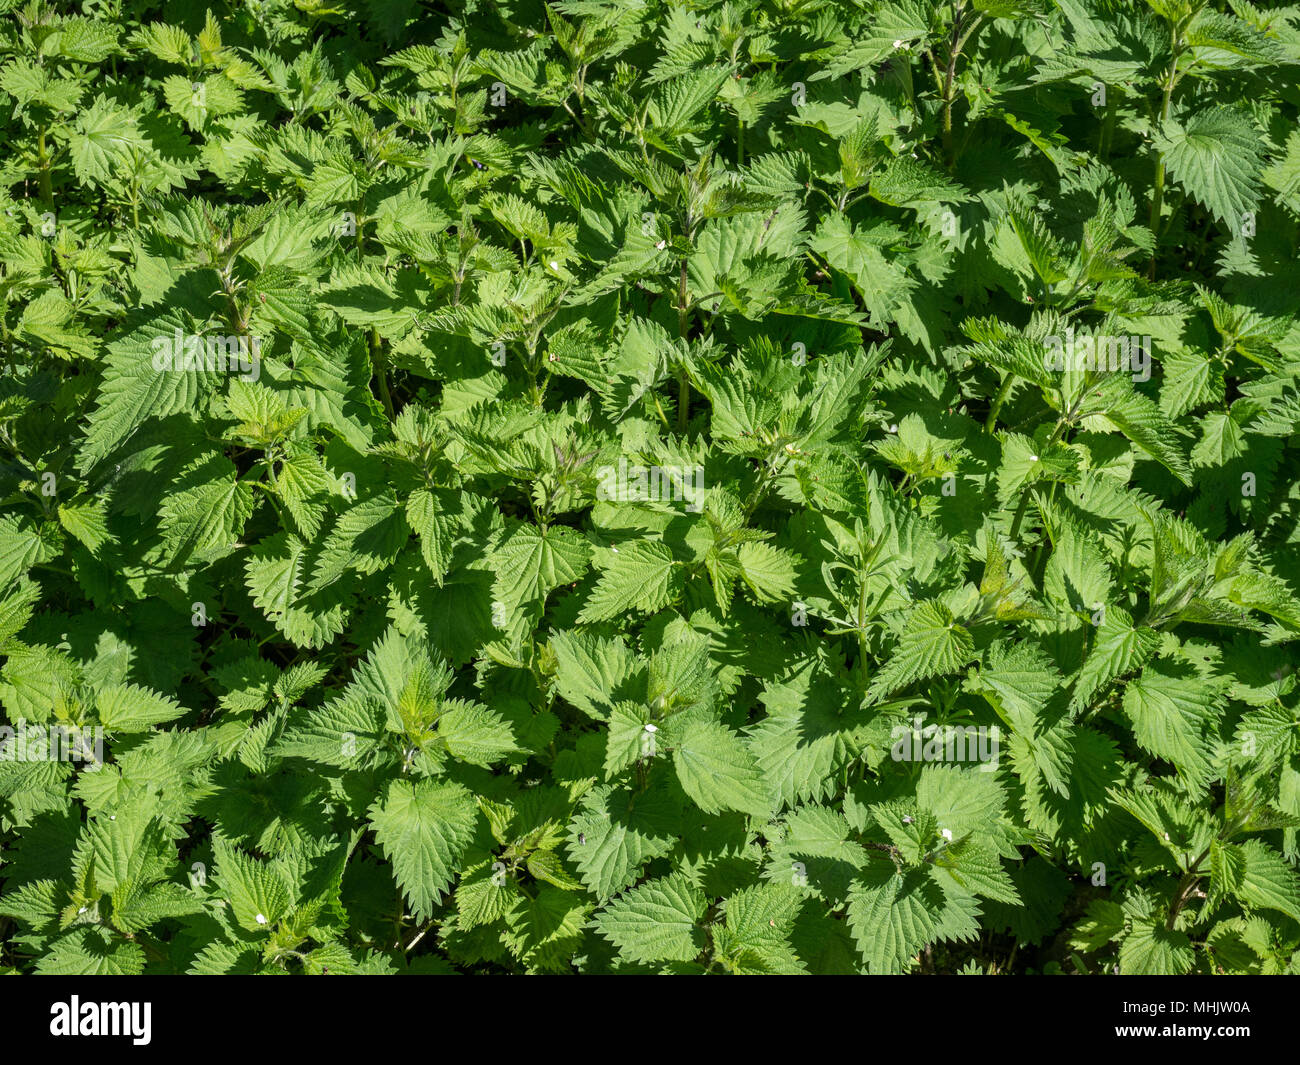 Llenado del bastidor imagen del follaje verde fresco de un parche de picazón ortiga Urtica dioica Foto de stock